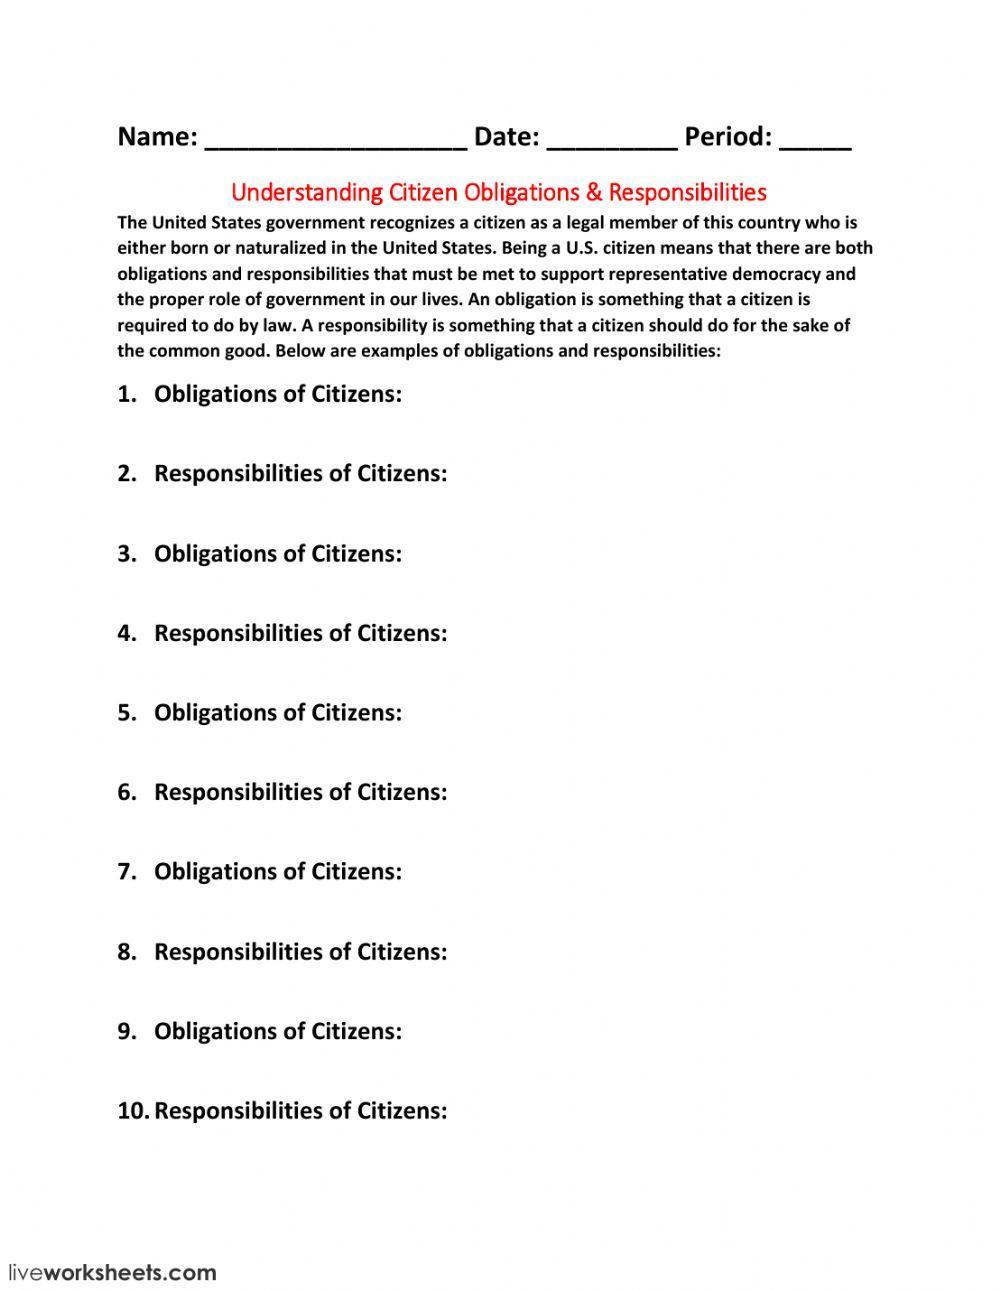 Understanding Citizen Obligations - Responsibilities